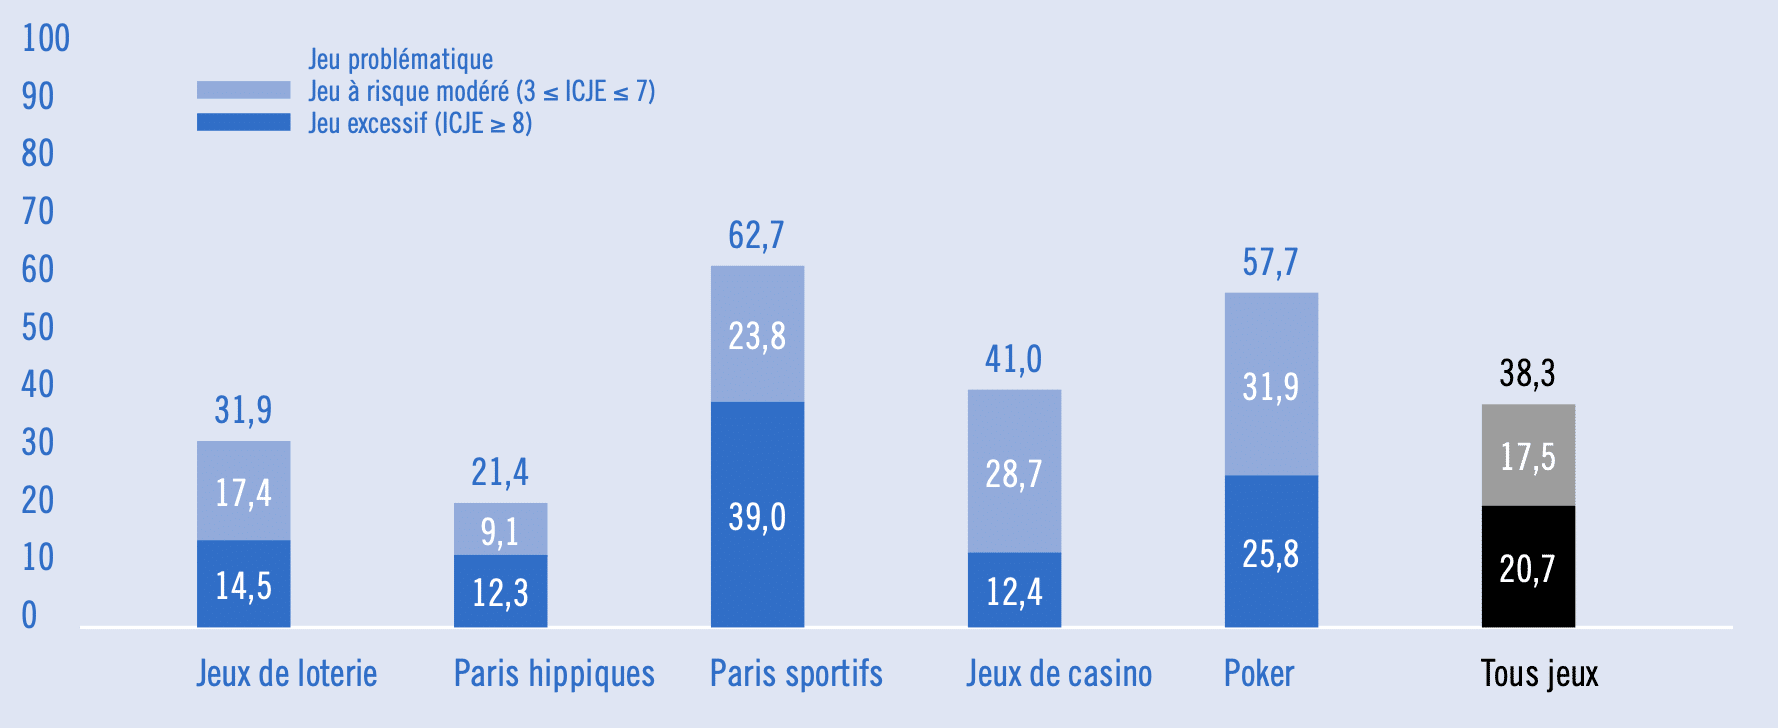 Industrie du jeu : ventes par catégorie en France 2022